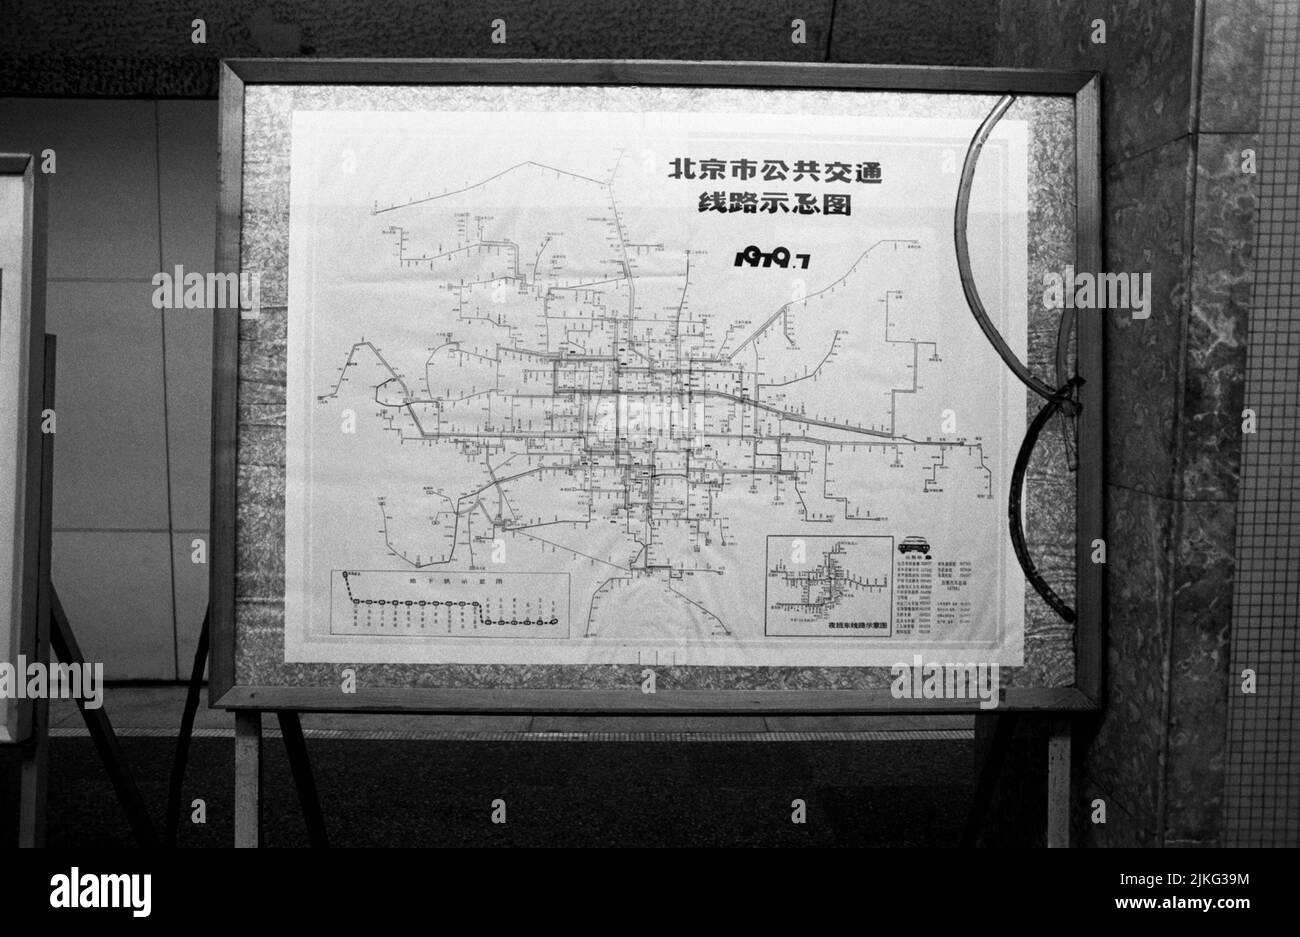 KINA BEIJING mapa de la red de metro de la capital Foto de stock